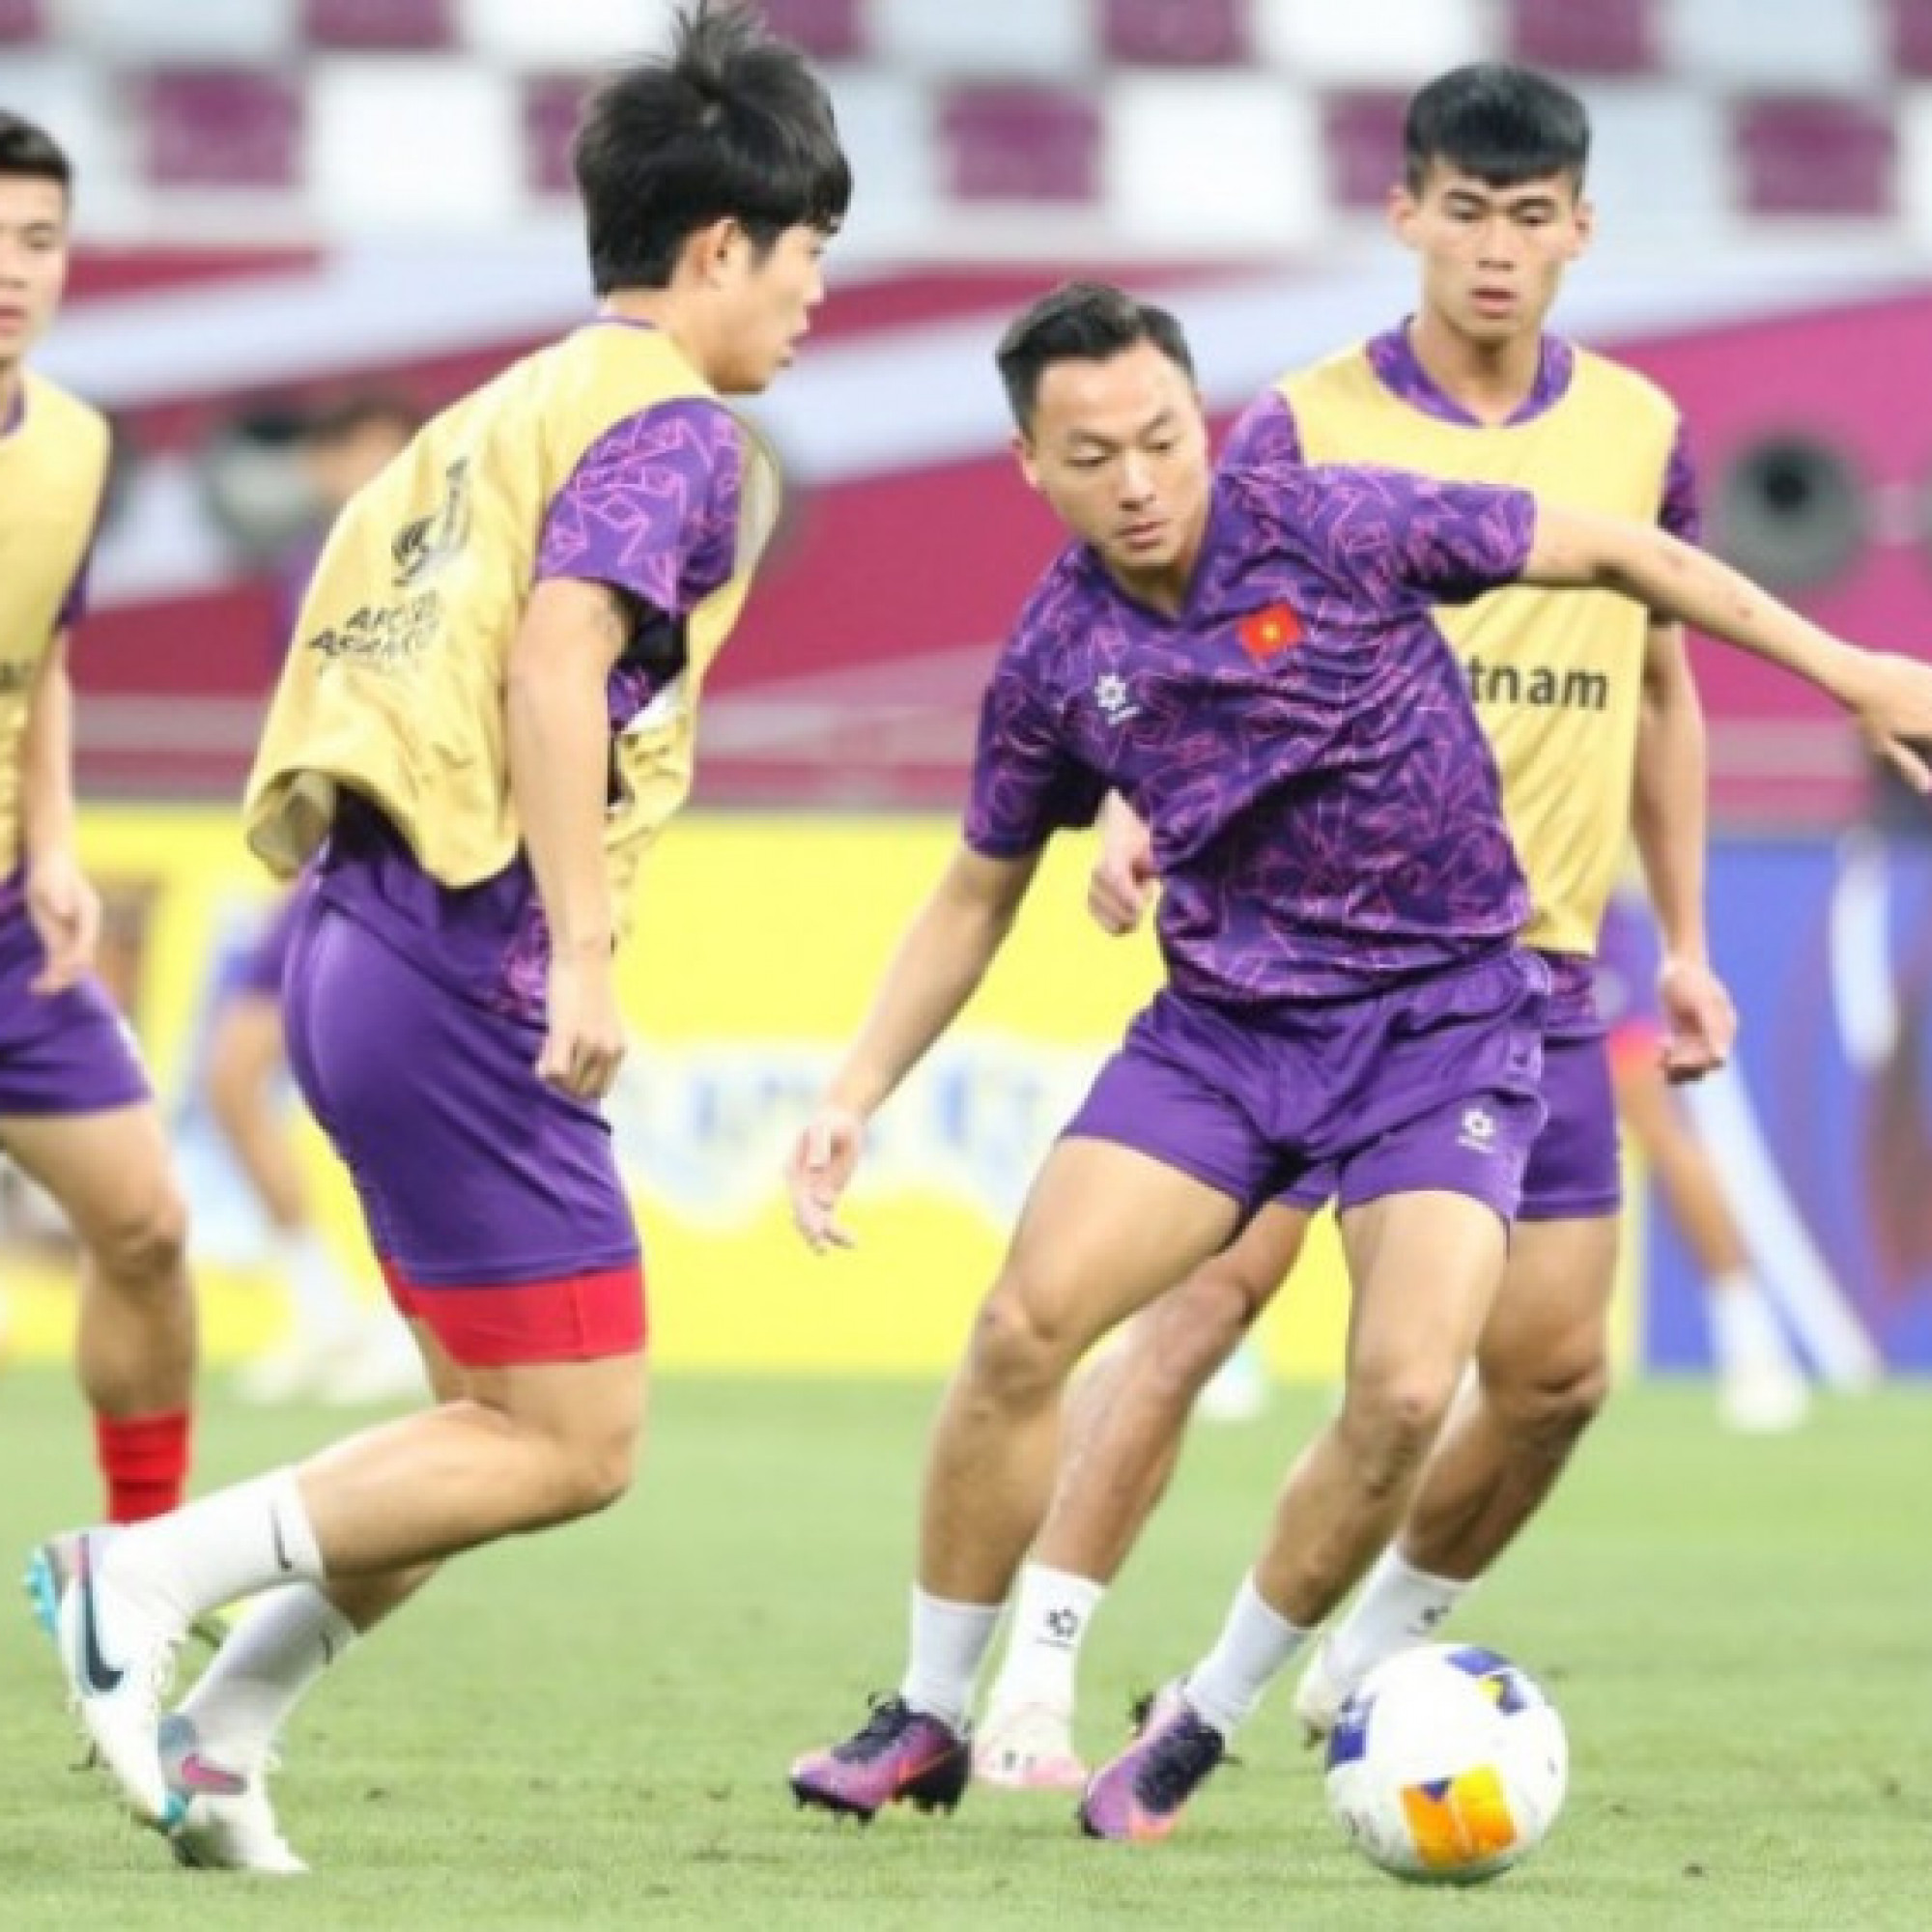  - Trực tiếp bóng đá U23 Việt Nam - U23 Uzbekistan: HLV Hoàng Anh Tuấn giữ chân Văn Khang, Văn Trường (U23 châu Á)